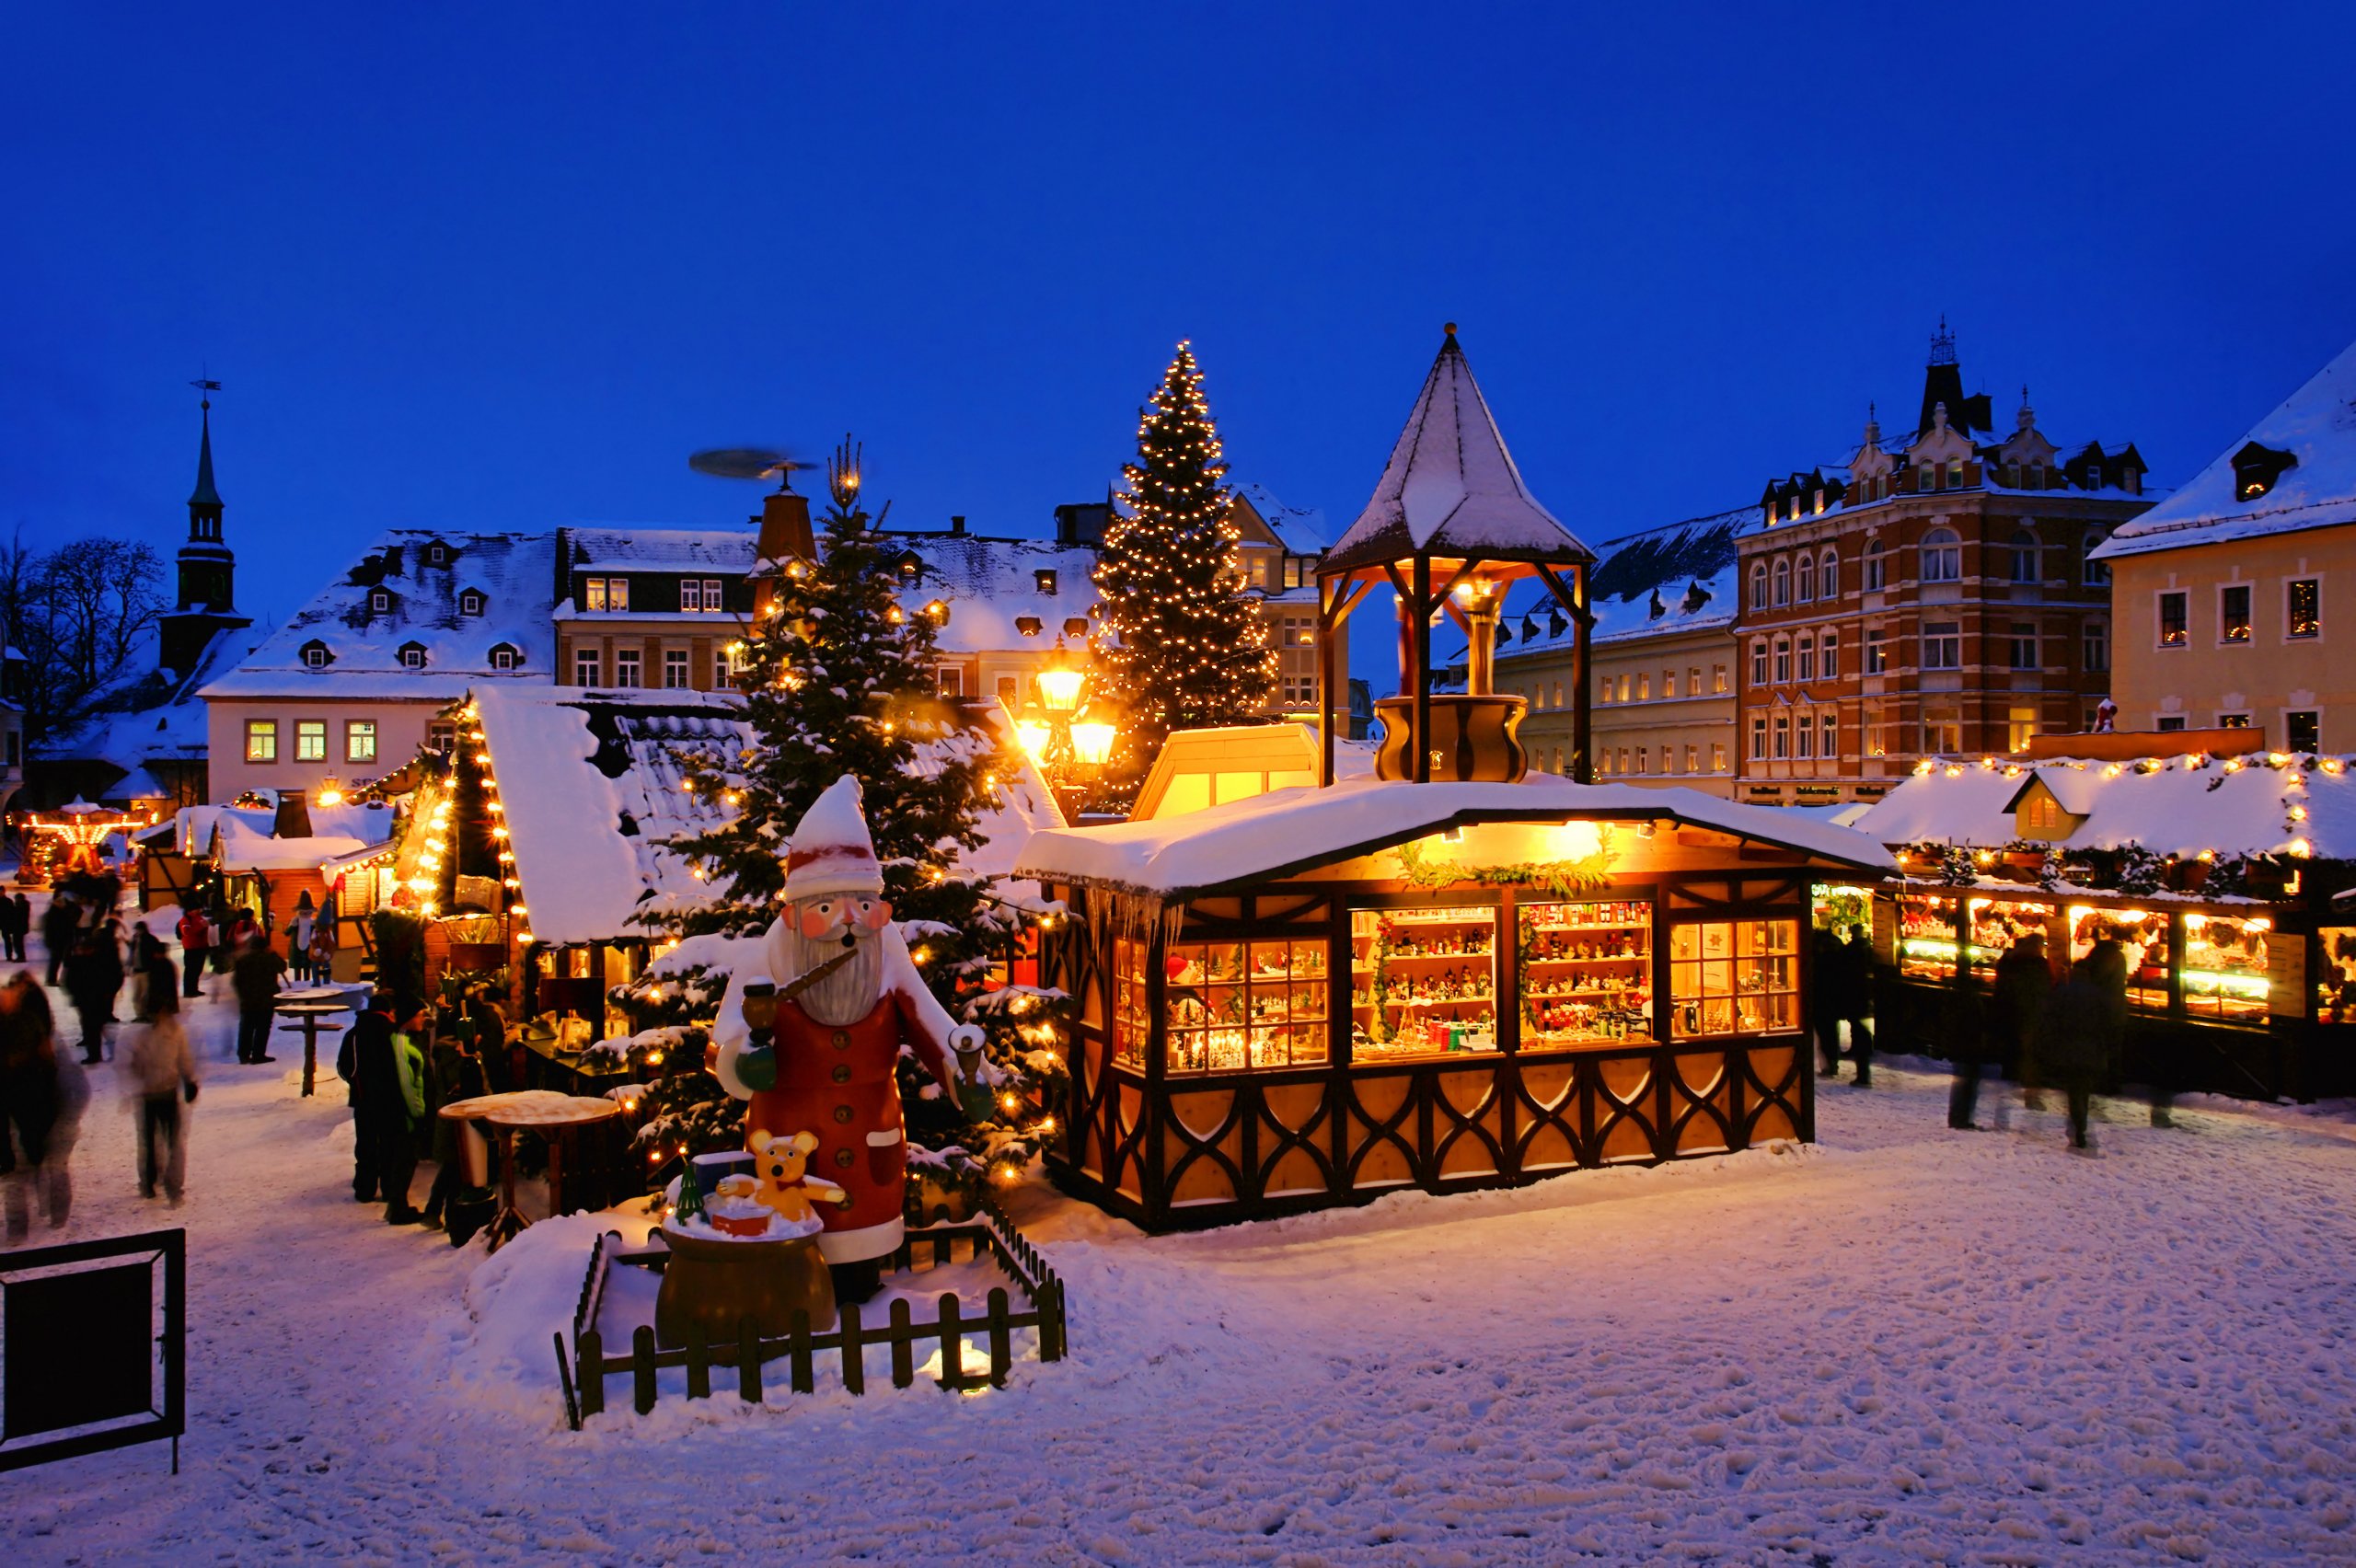 Festlich erleuchteter Weihnachtsmarkt, Schnee bedeckte Buden, geschmückte Tanne, riesiger Weihnachsmann mit Geschenkesack im Vordergrund. StockAdobe/LianeM